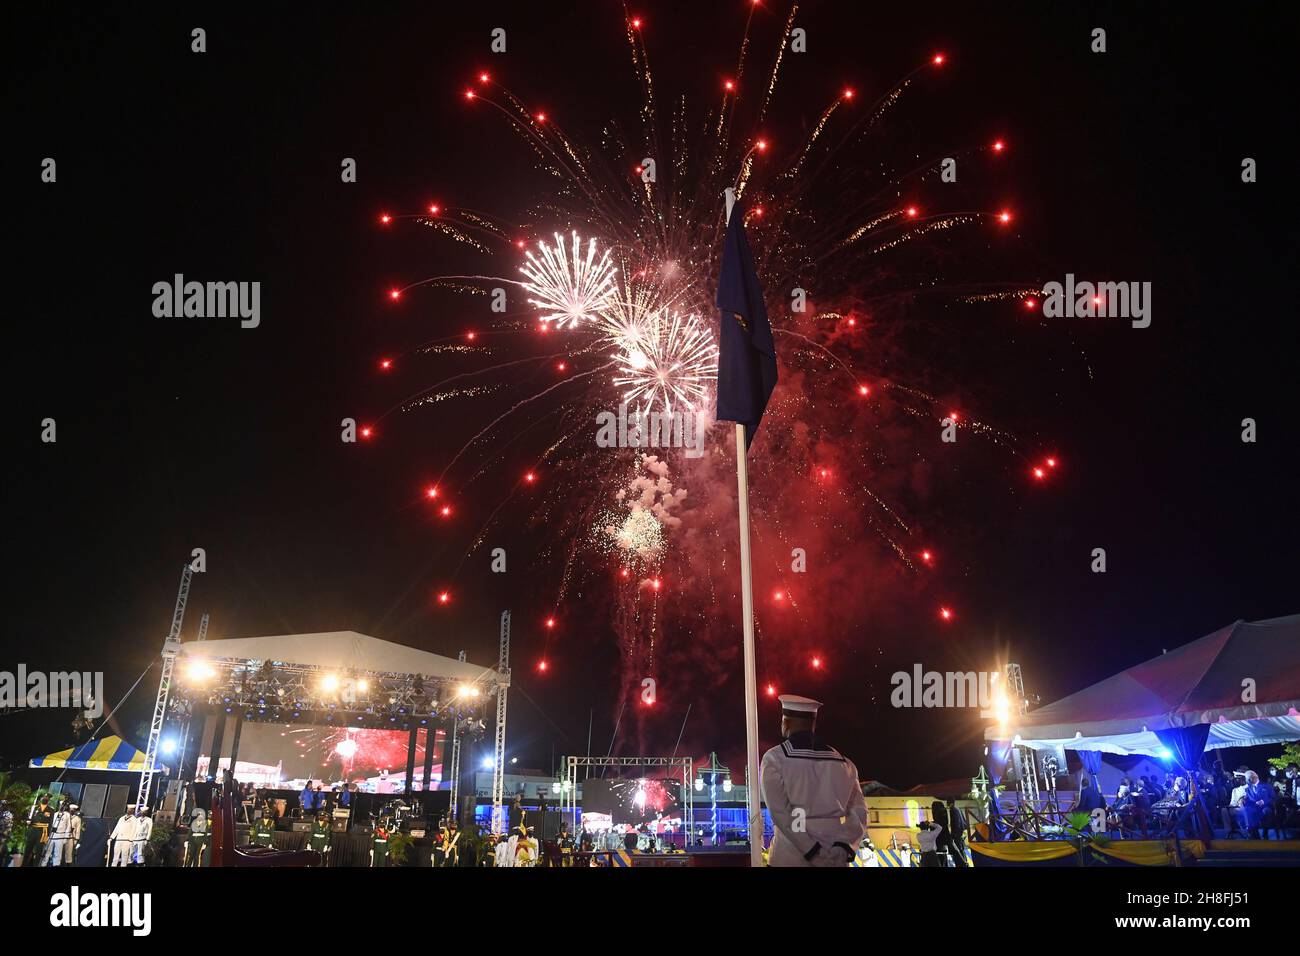 Bei der Einweihungsfeier des Präsidenten werden Feuerwerke zur Geburt einer neuen republik in Barbados, Bridgetown, Barbados, gesehen. Bilddatum: Dienstag, 30. November 2021. Stockfoto